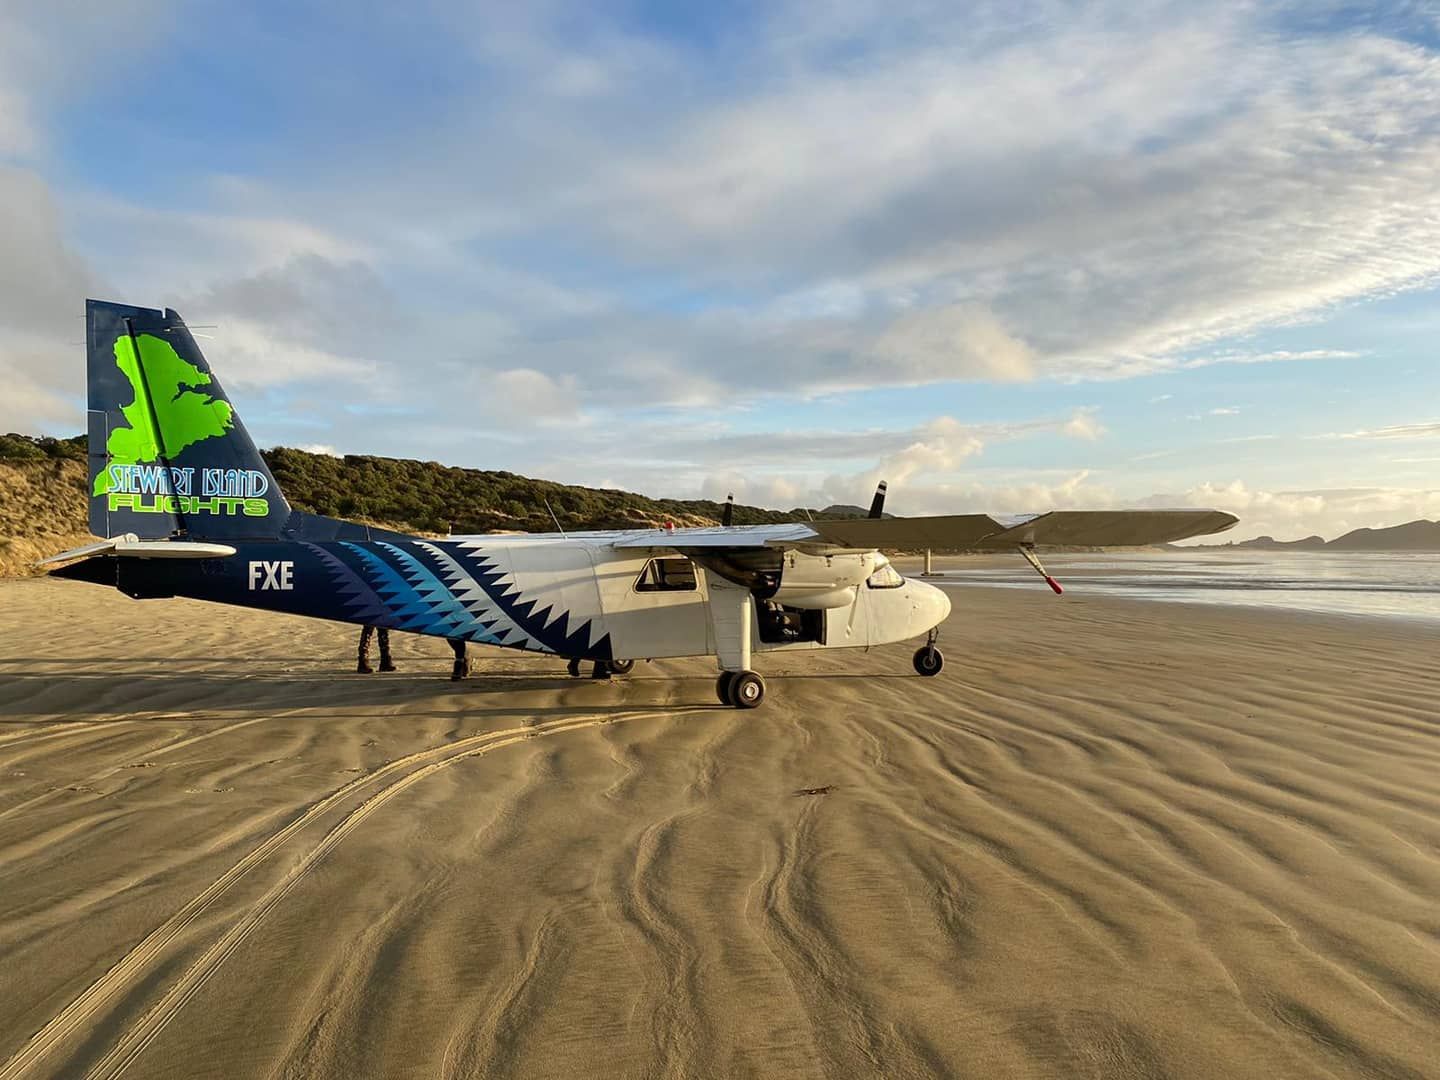 Stewart Island Flights FXE - Marty_wills